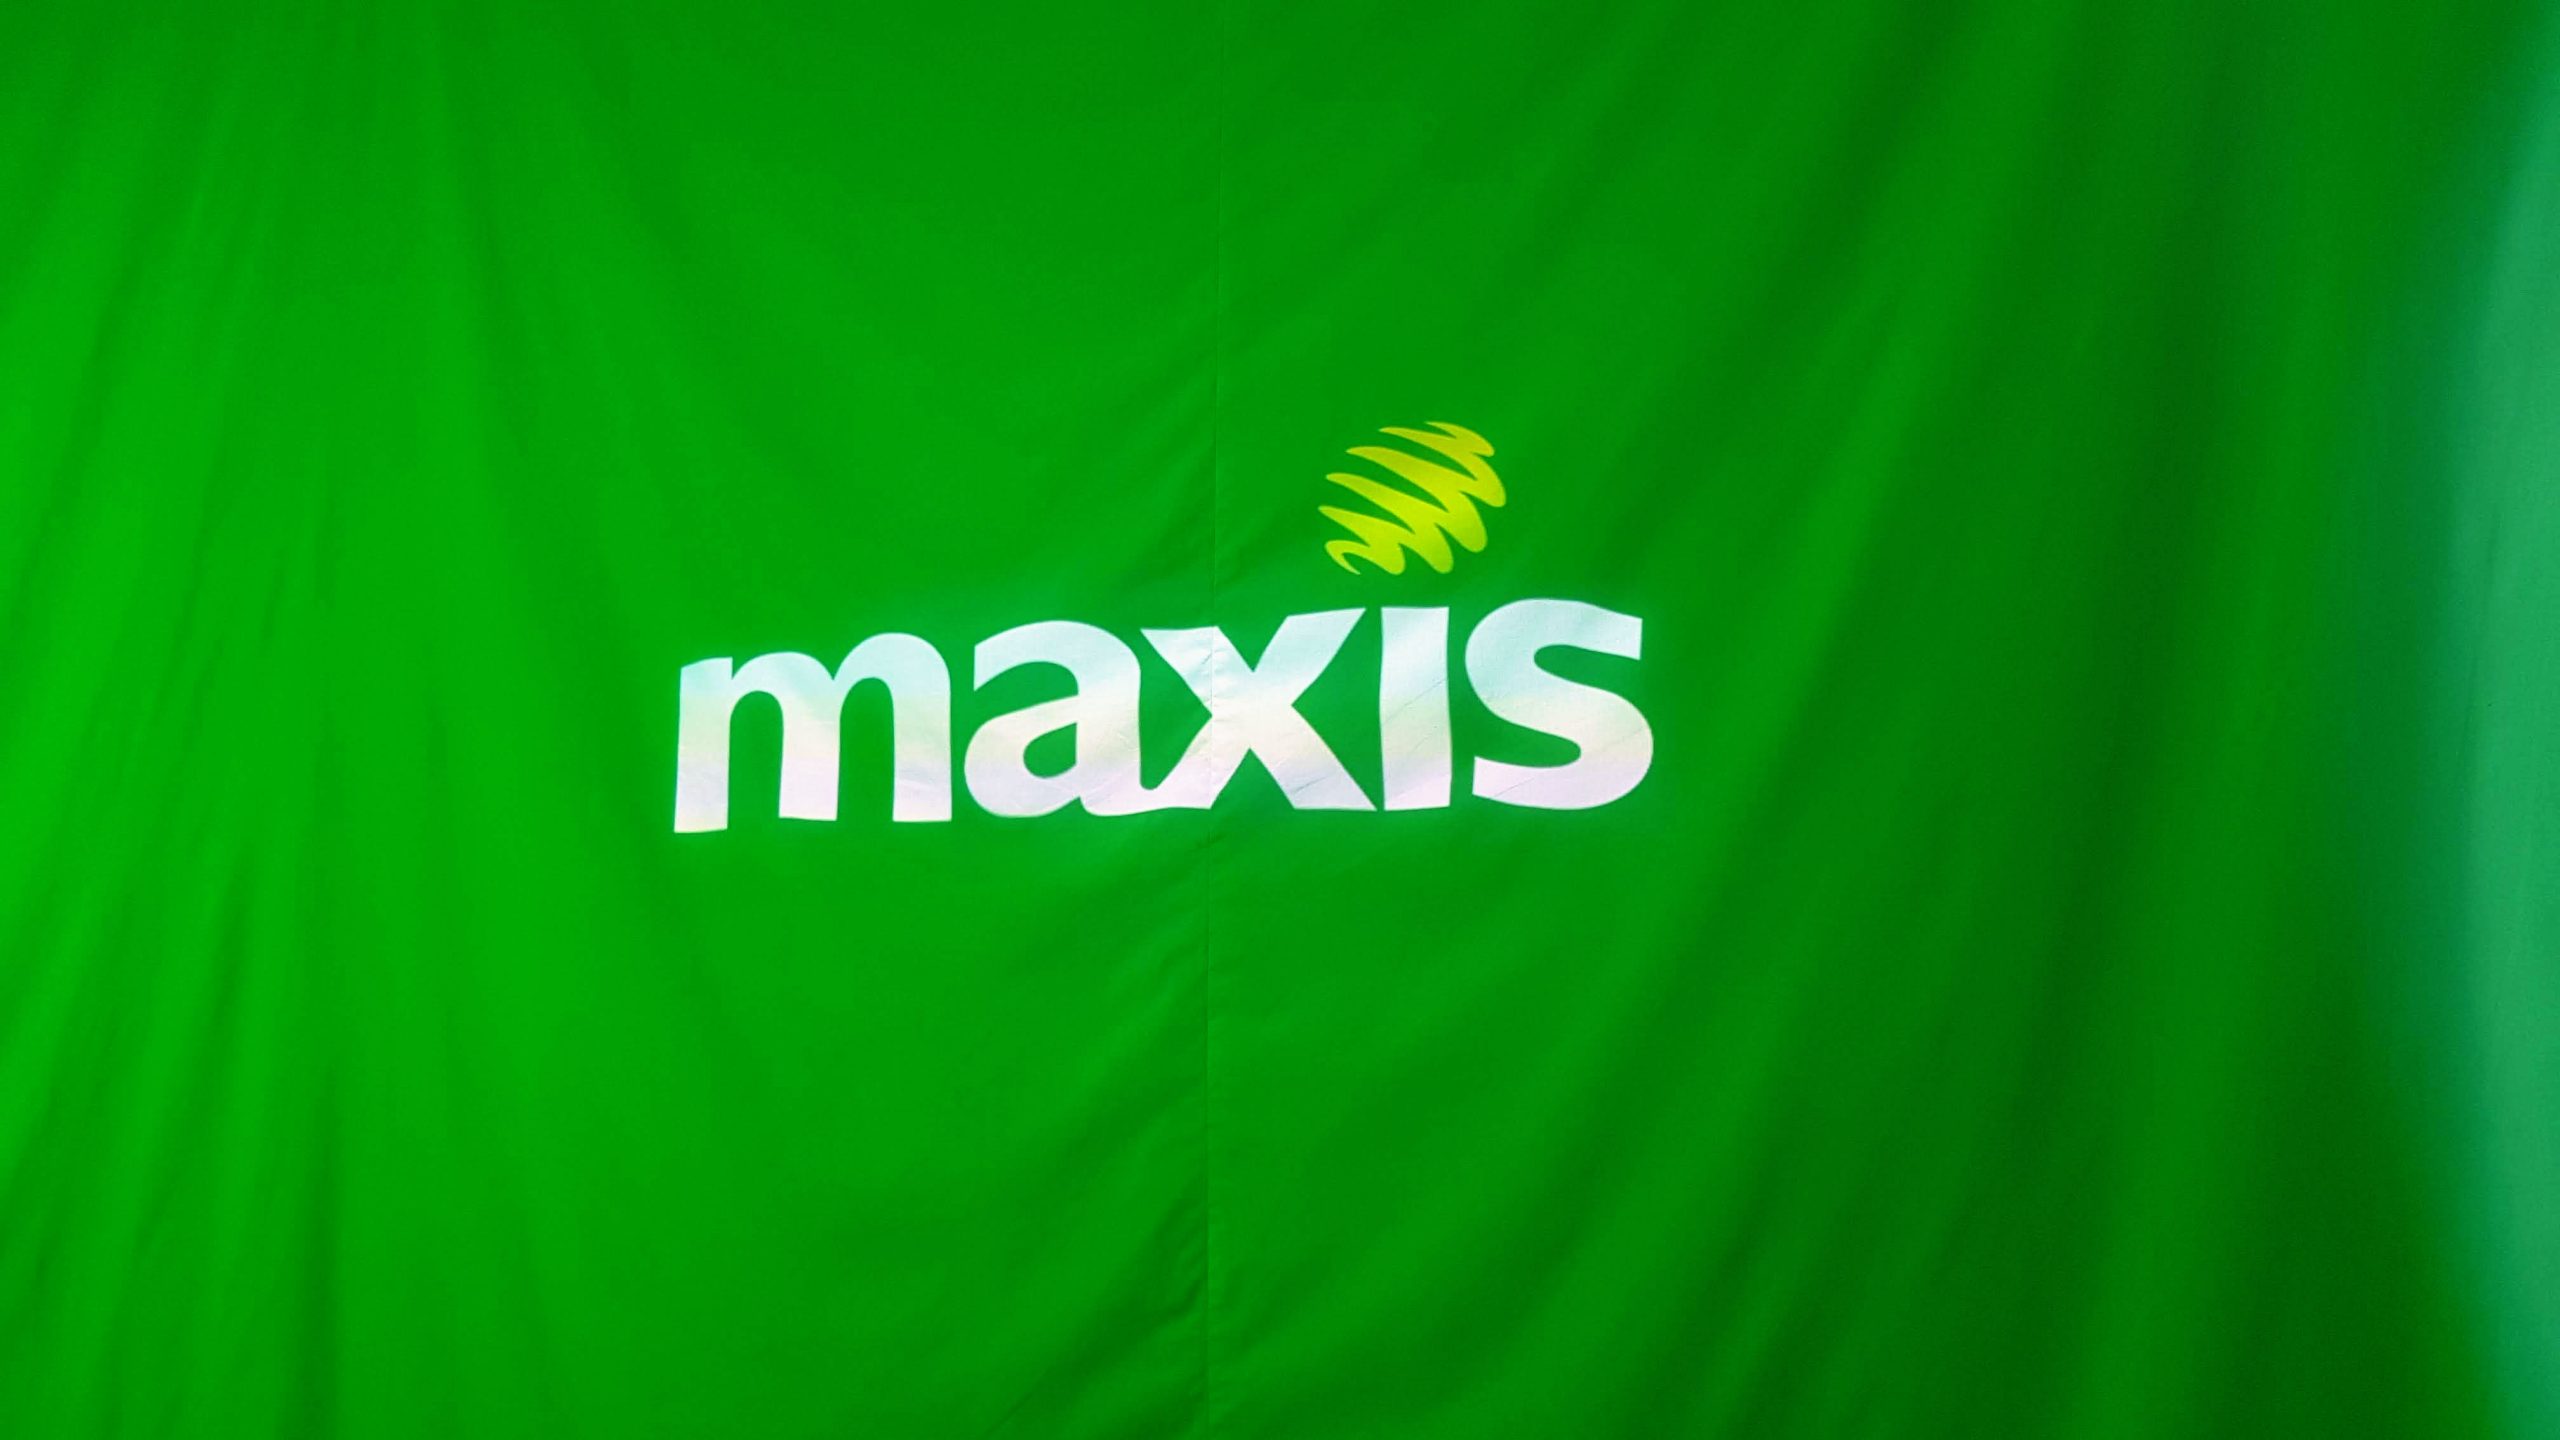 Maxis: Godaman R00TK1T Tidak Memberi Kesan Terhadap Sistem Dalaman Mereka